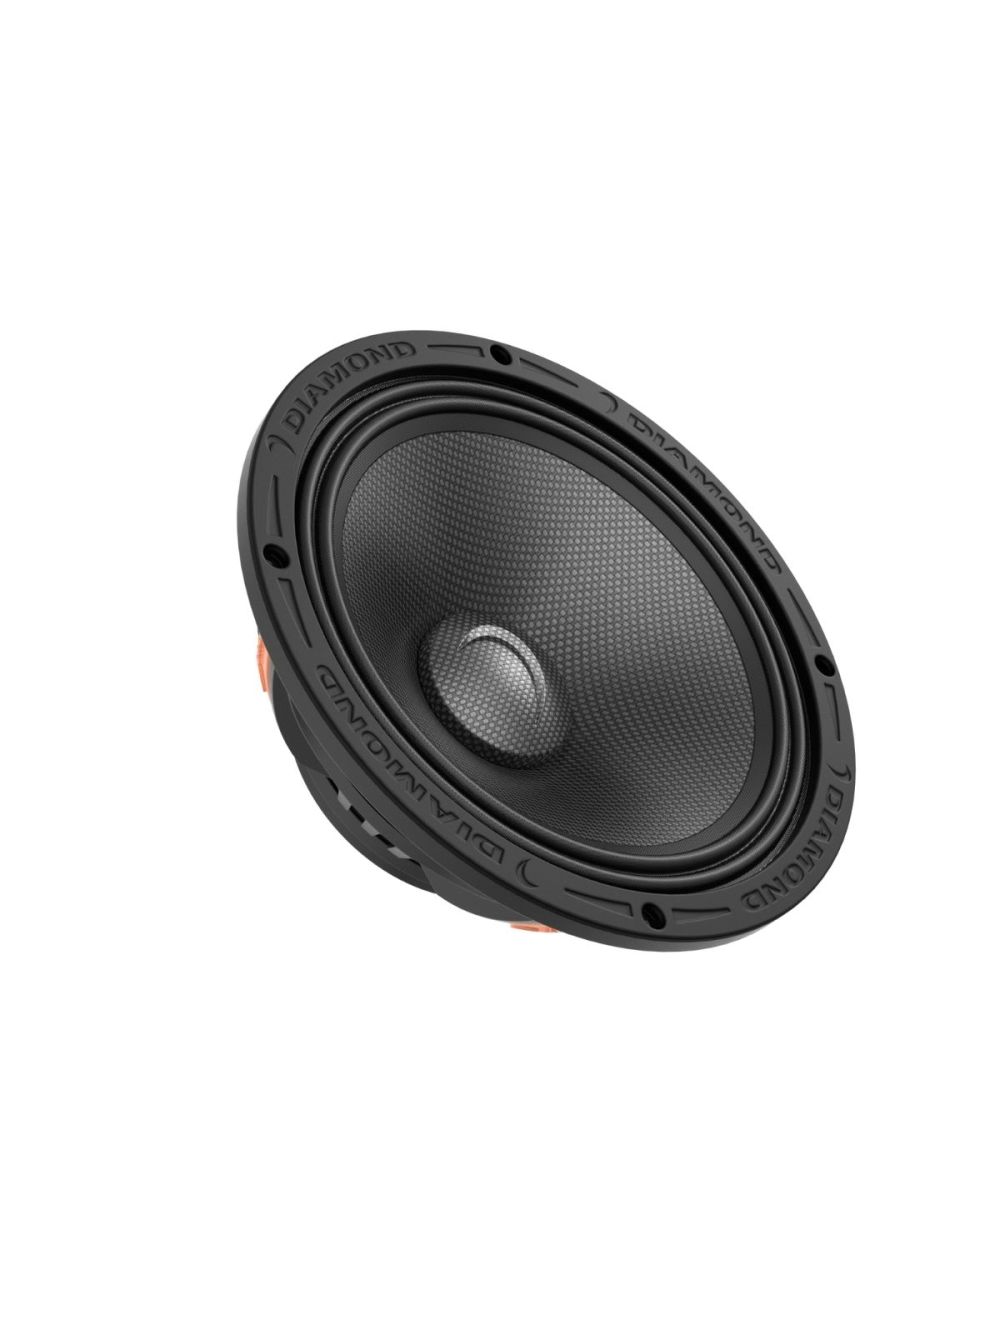 Diamond Audio 8 inch Neodymium 2 Ohm Mid Bass Speaker MSMB82NEO